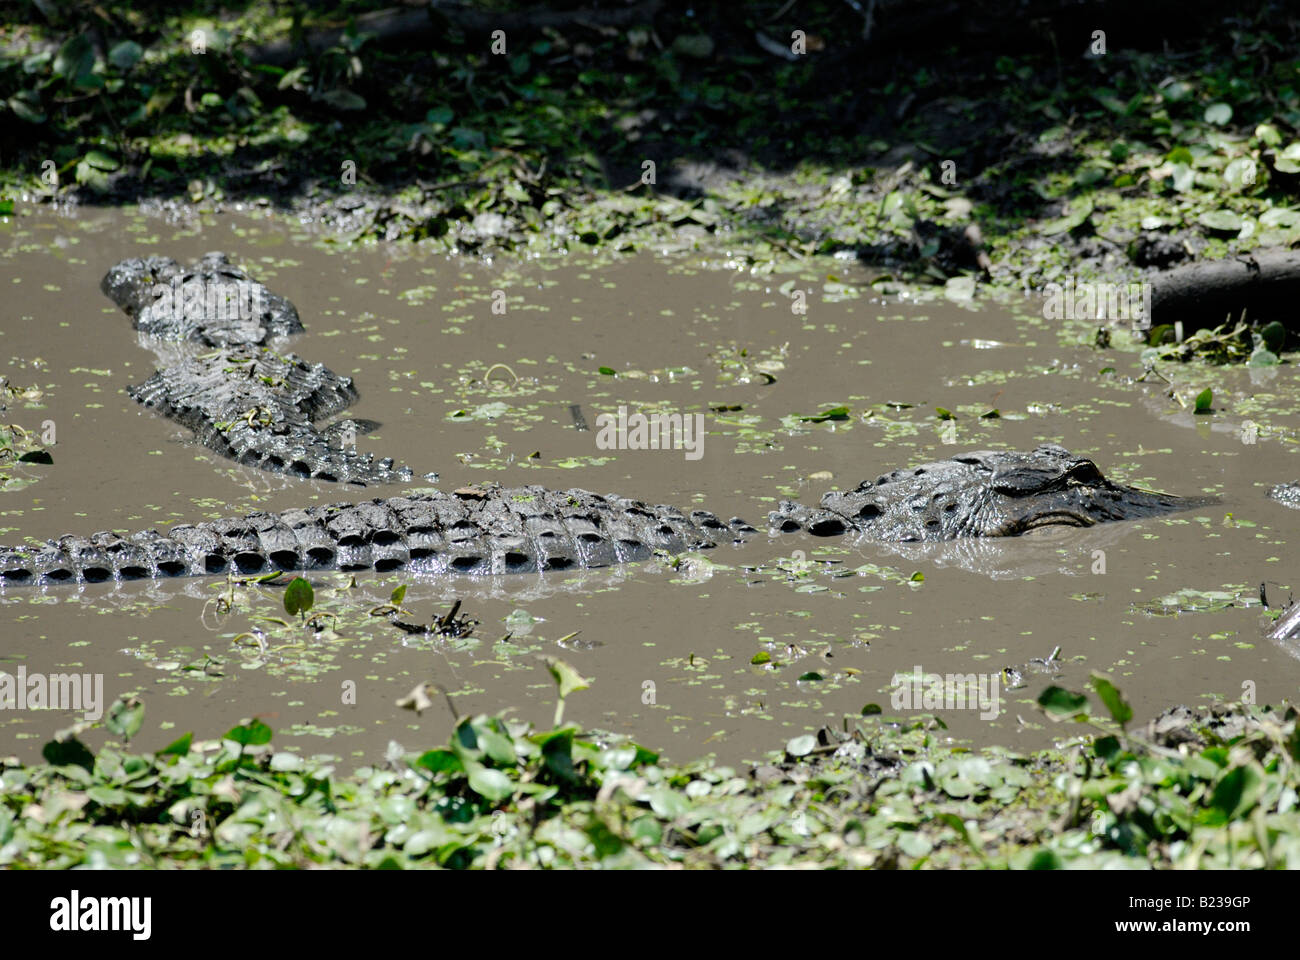 Amerikanischen Alligatoren Alligator Mississippiensis im schlammigen Wasser von einem Cypress swamp Corkscrew Swamp Audubon Sanctuary Florida Stockfoto